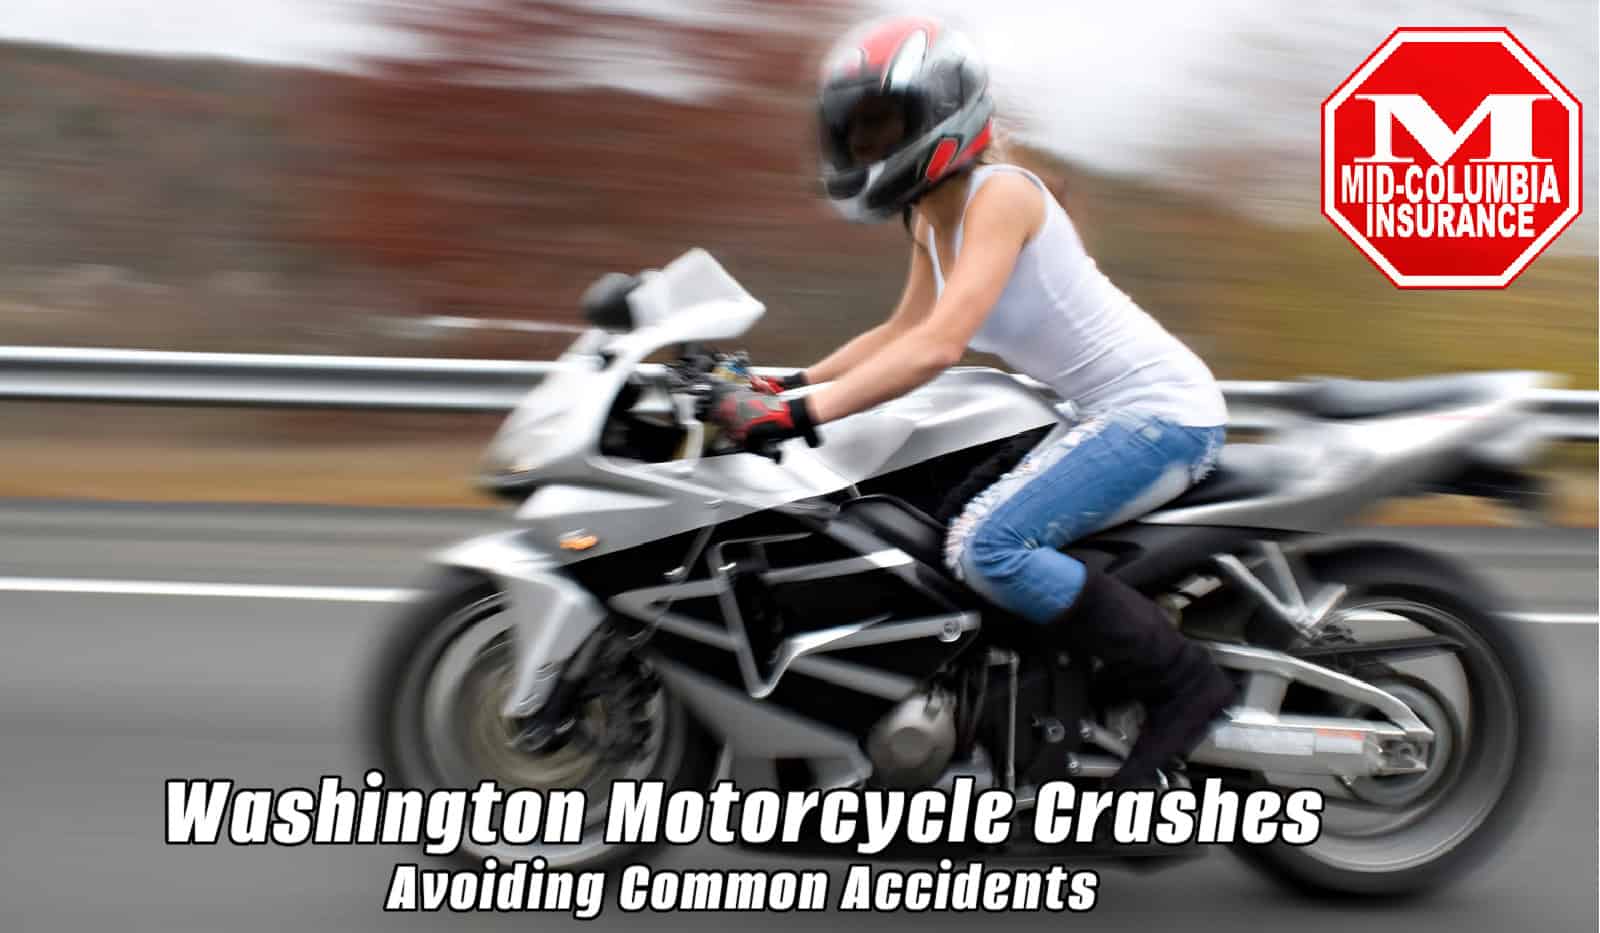 common-motorcycle-crashes-|-washington-state-|-safety-tips